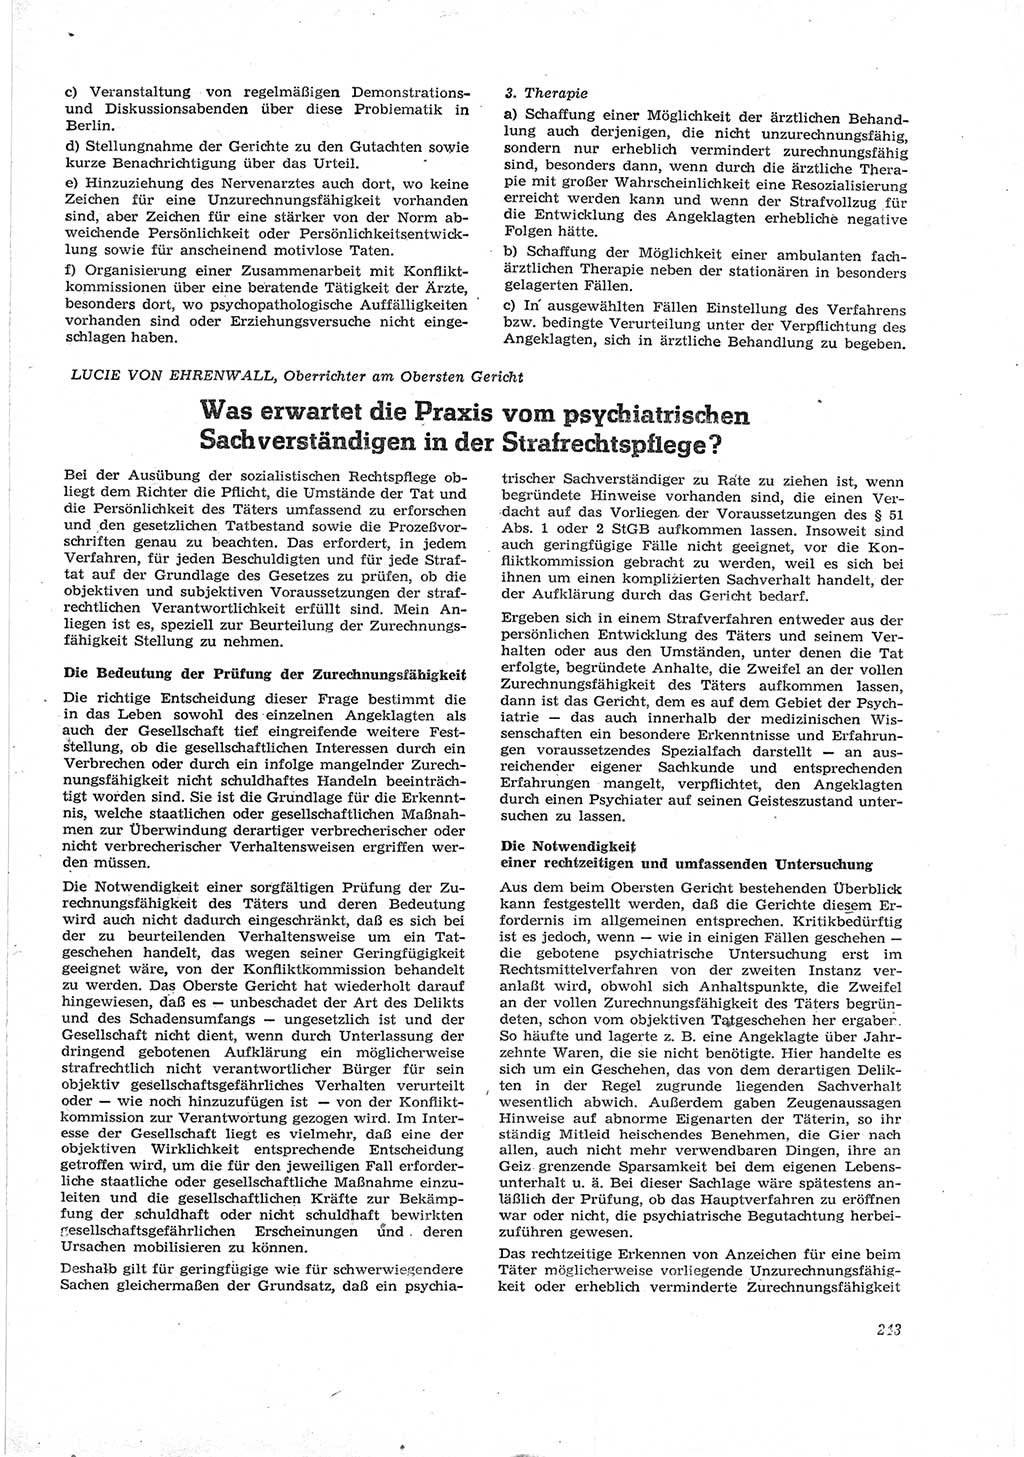 Neue Justiz (NJ), Zeitschrift für Recht und Rechtswissenschaft [Deutsche Demokratische Republik (DDR)], 17. Jahrgang 1963, Seite 243 (NJ DDR 1963, S. 243)